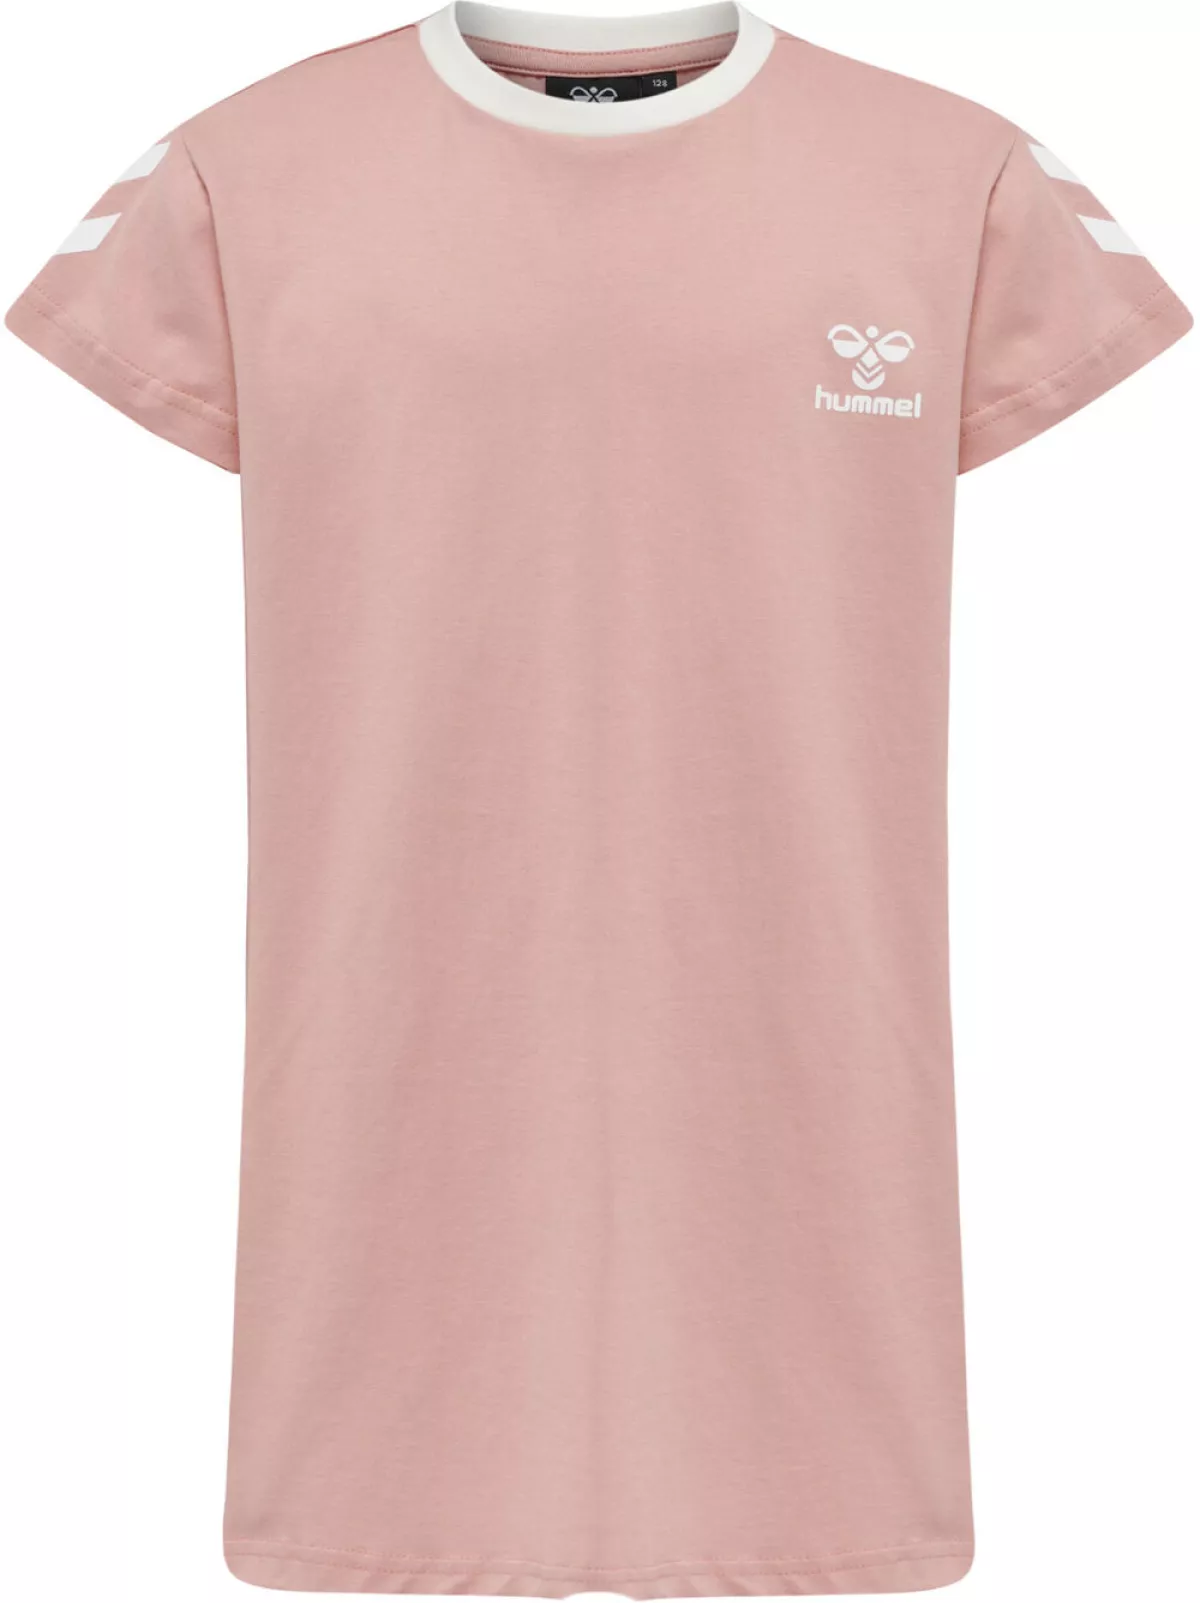 #3 - Hummel Mille Lang Tshirt Piger Tøj Pink 152